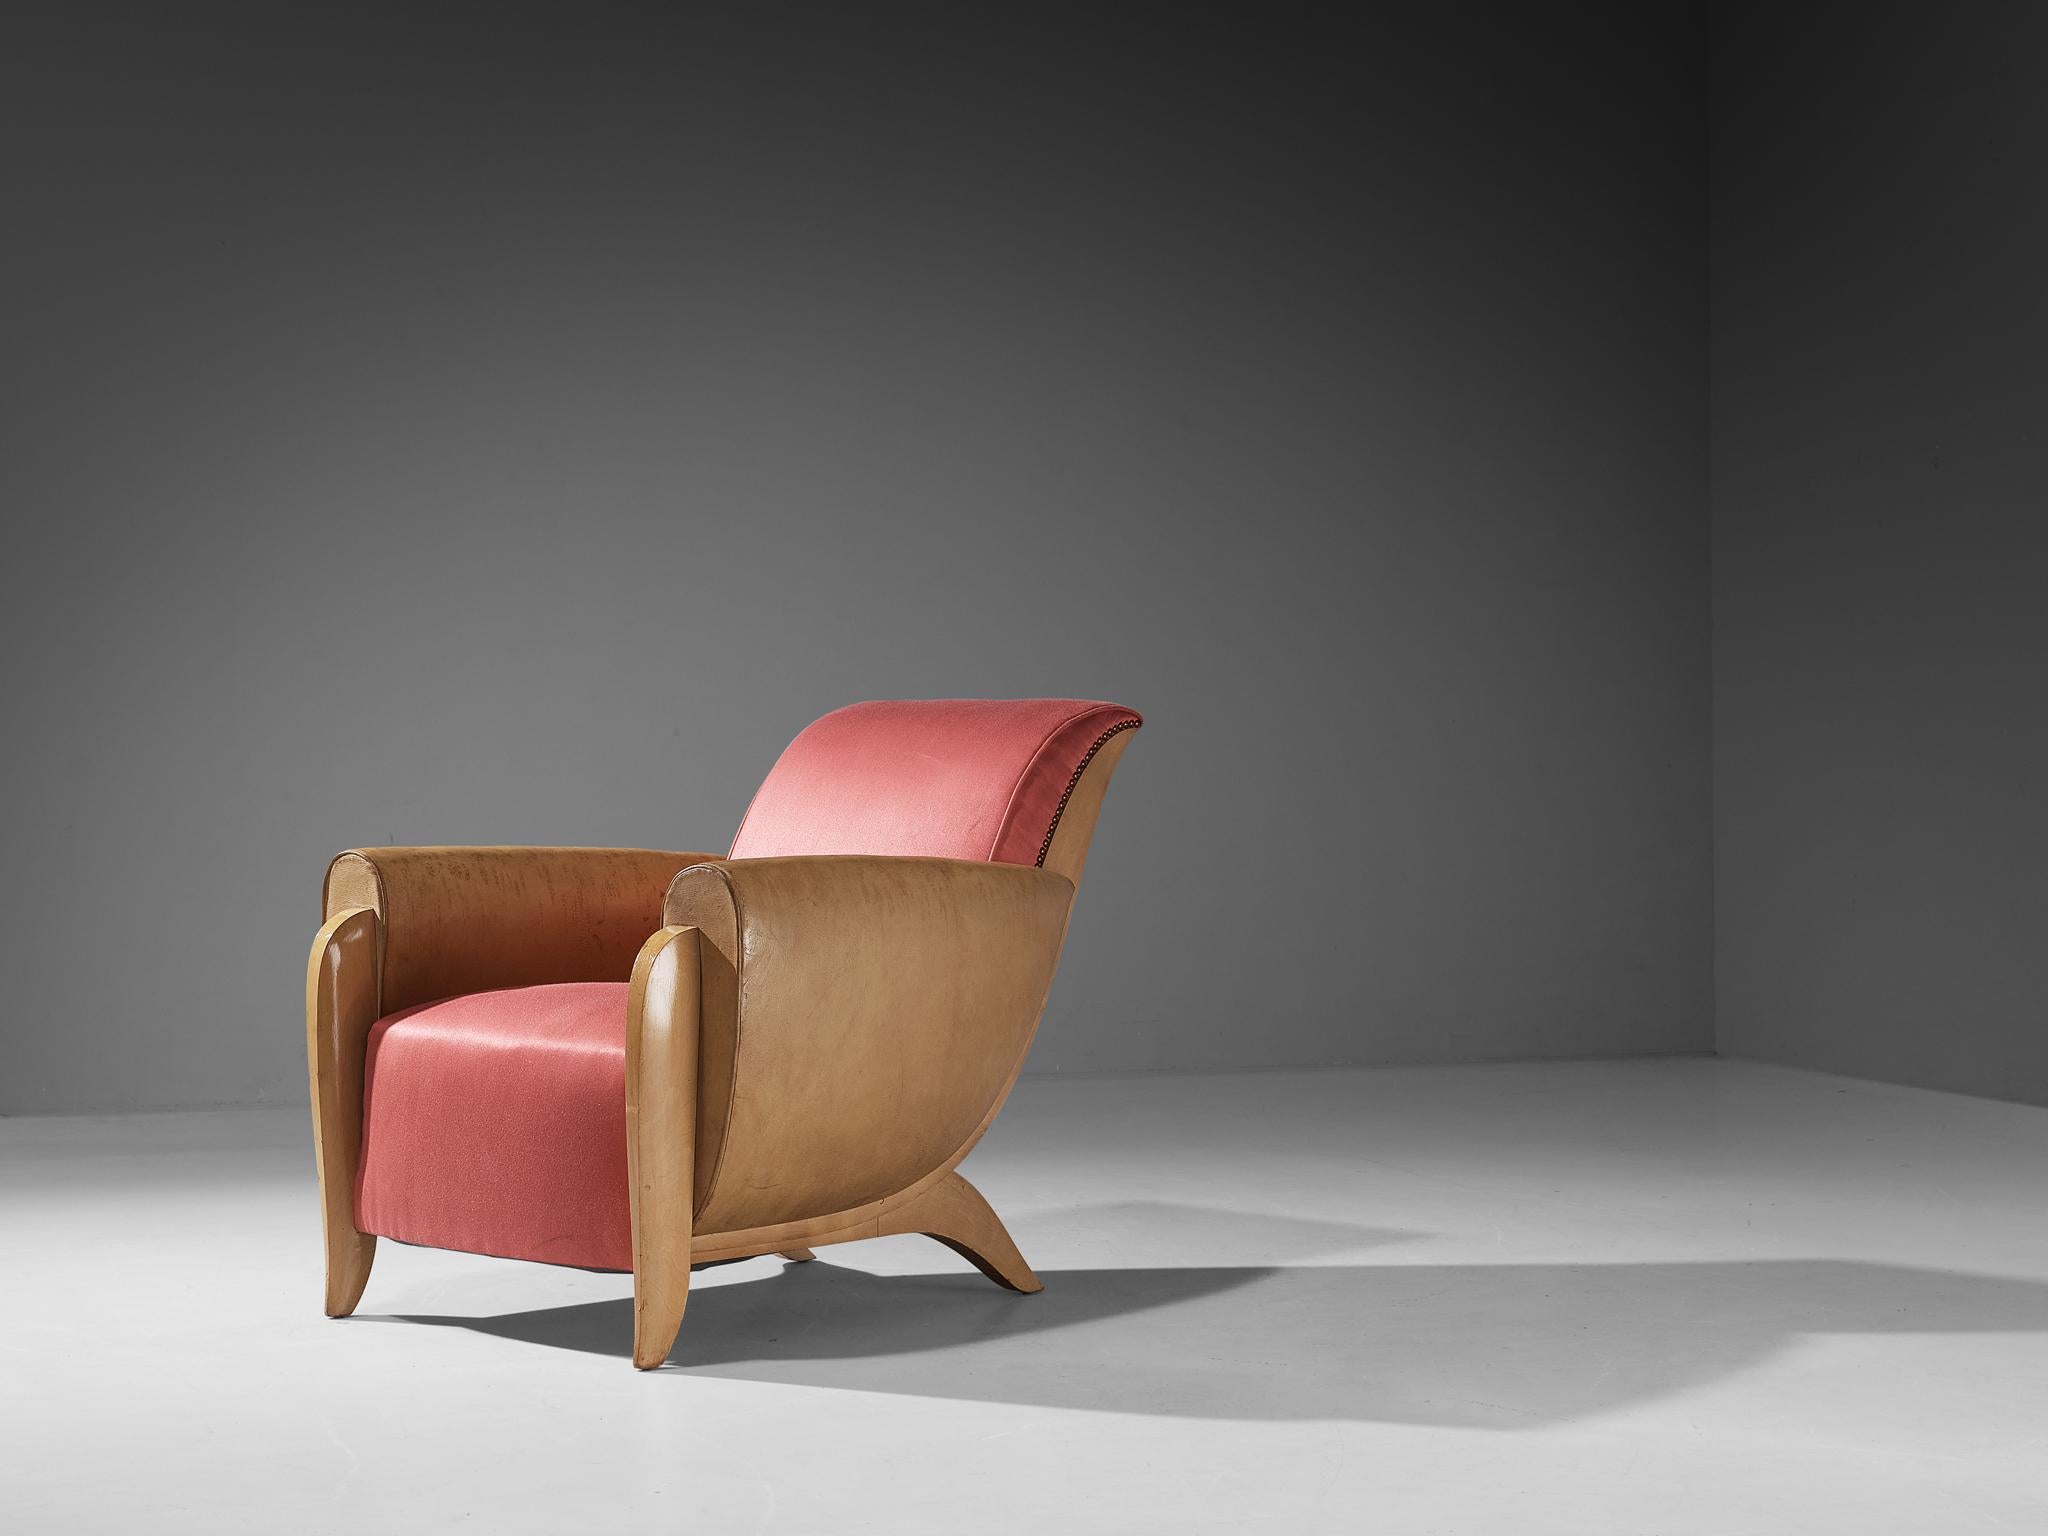 Sessel, Seide, Leder, Messing, Birke, Frankreich, Circa. 1930.

Dieser wunderschön gestaltete Loungesessel stammt aus einer der einflussreichsten Epochen der Kunst, nämlich der Art-Déco-Bewegung. Dieser seltene Loungesessel stammt aus Frankreich und